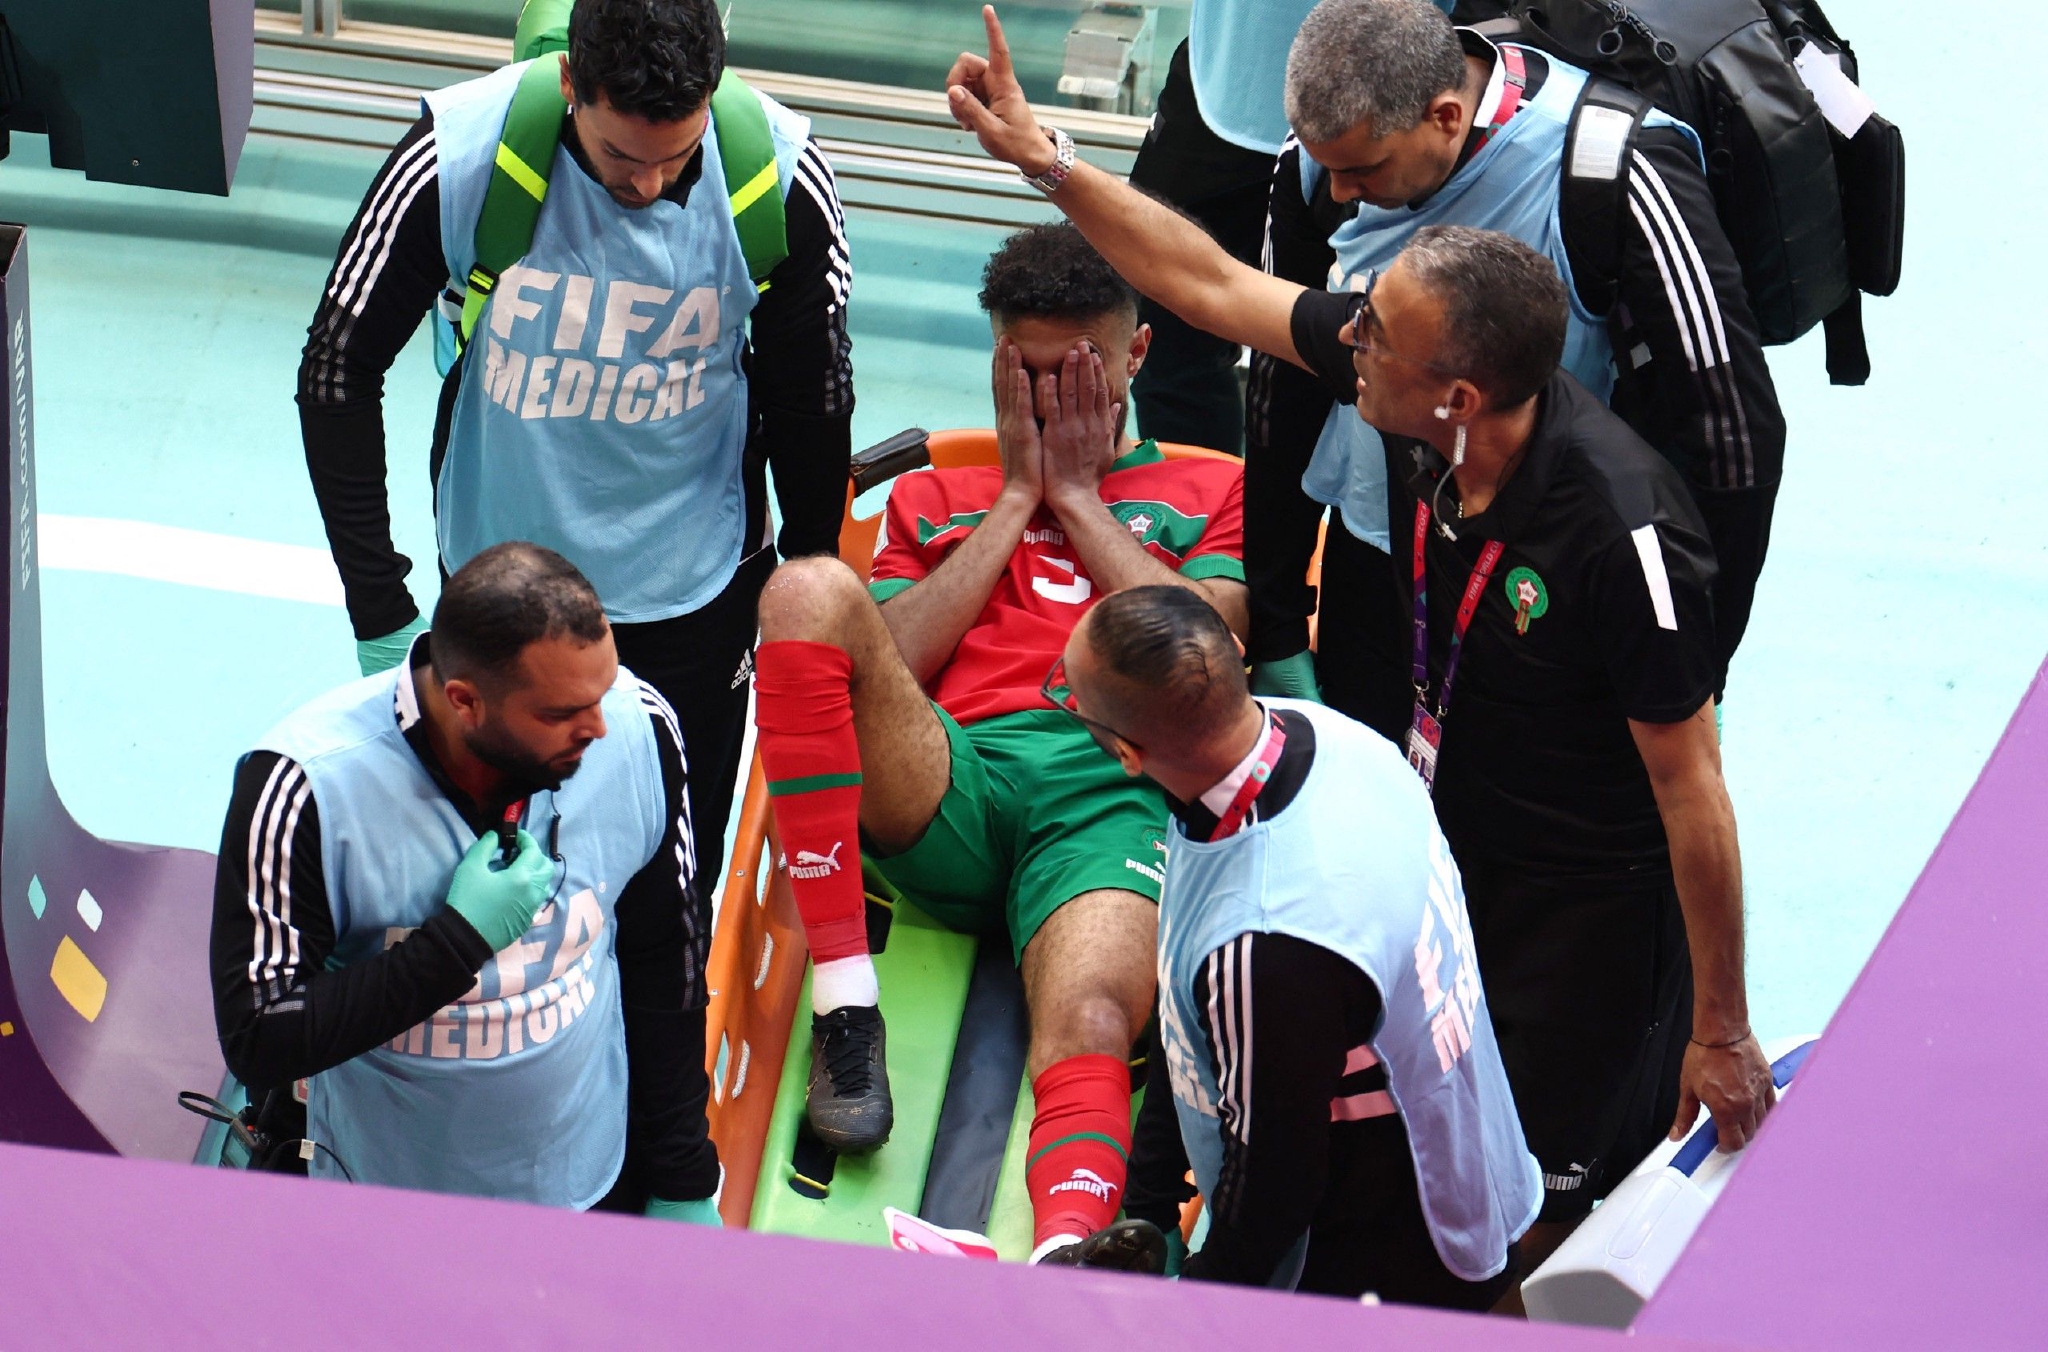 虽然球员在之后曾想继续比赛，但是马兹拉维在队医检查后被换下场担架抬离。据悉，马兹拉维受伤的部位是腰部